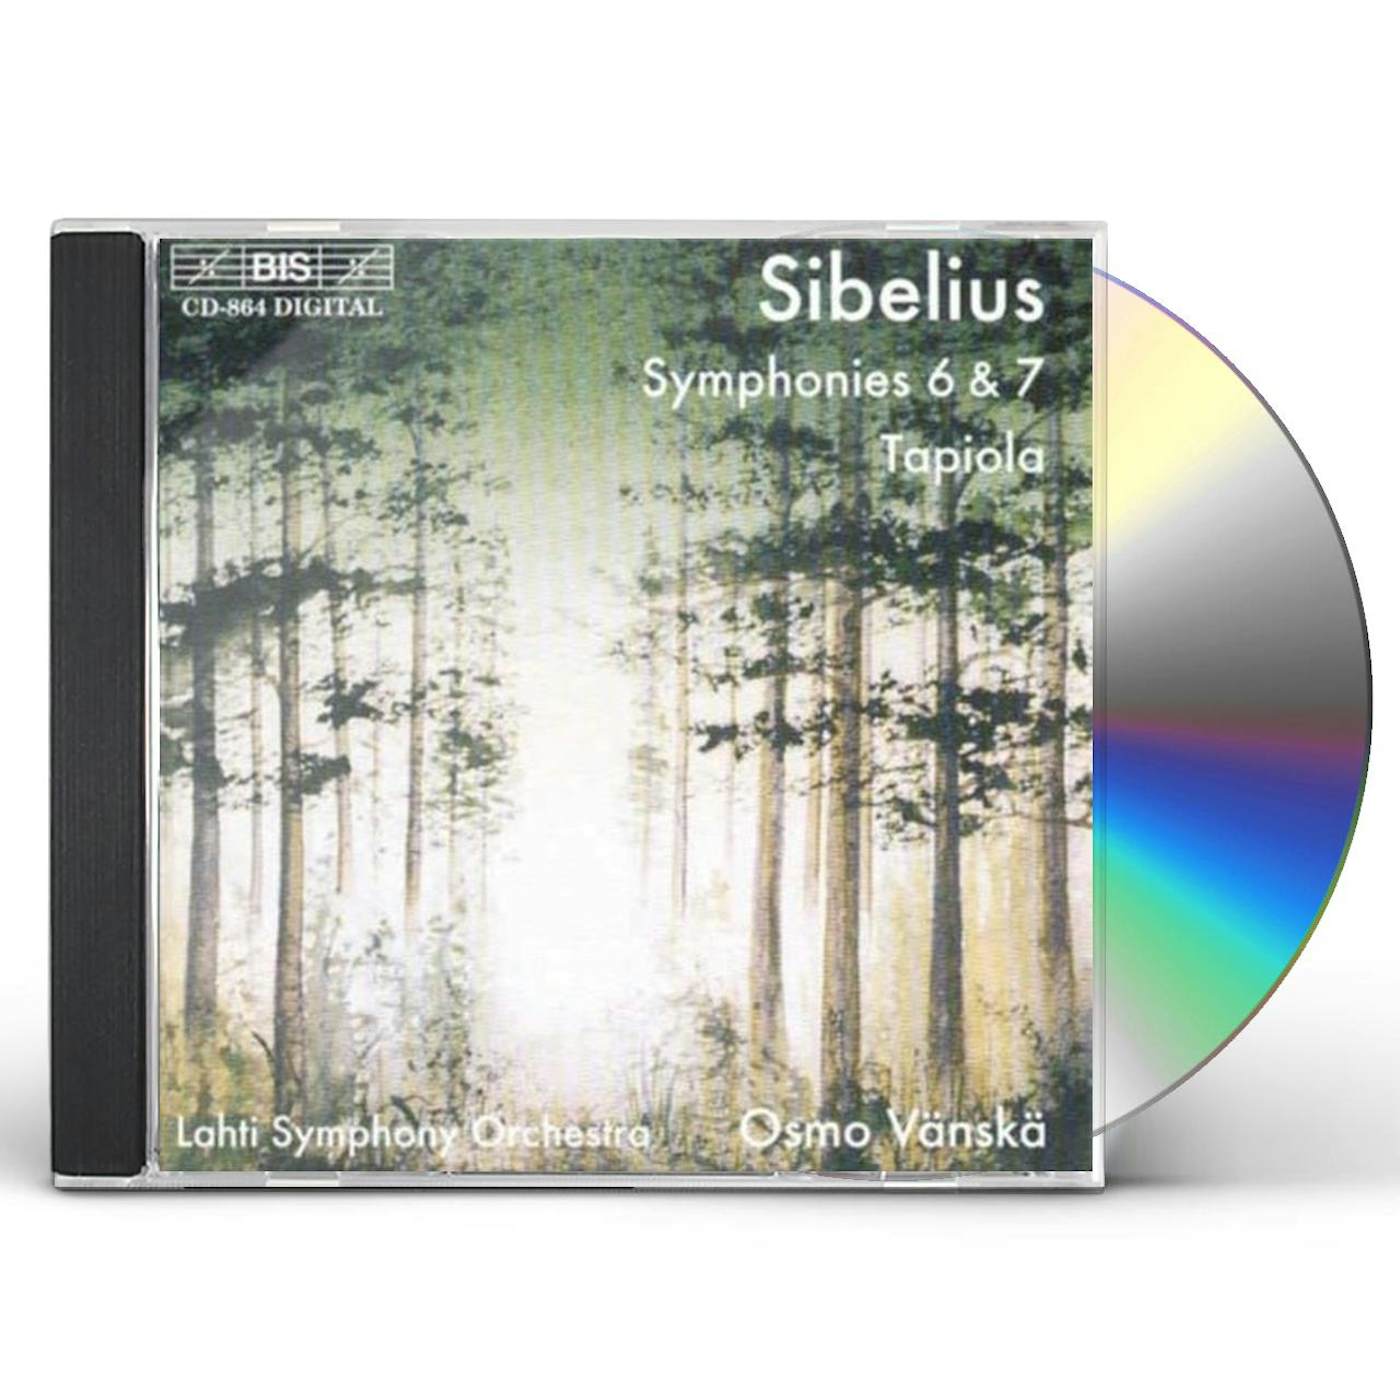 Sibelius SYM 6 7 TAPIOLA CD